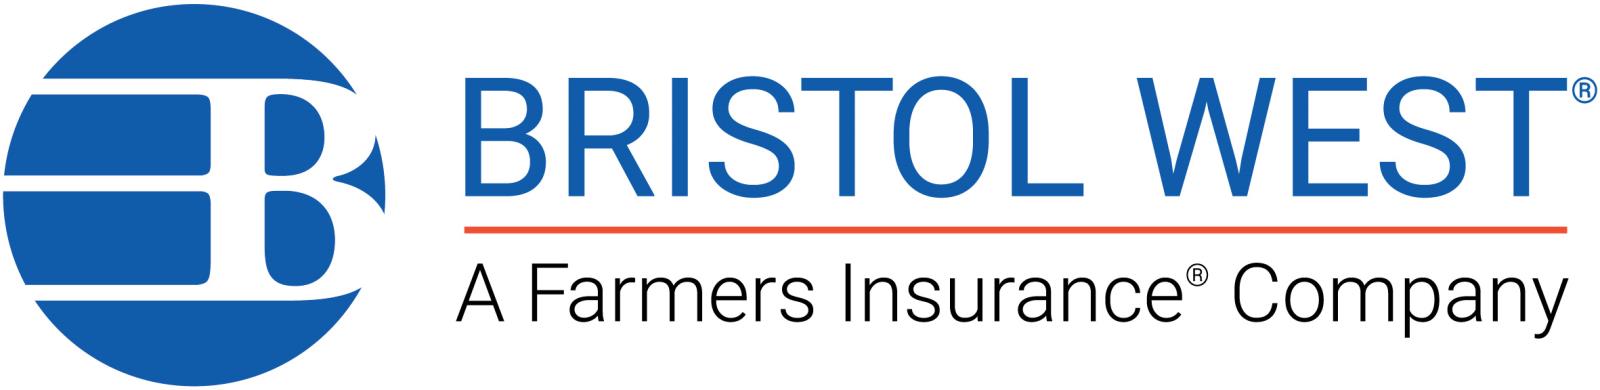 BristolWest_Farmers_Logo_RGB_High.jpg